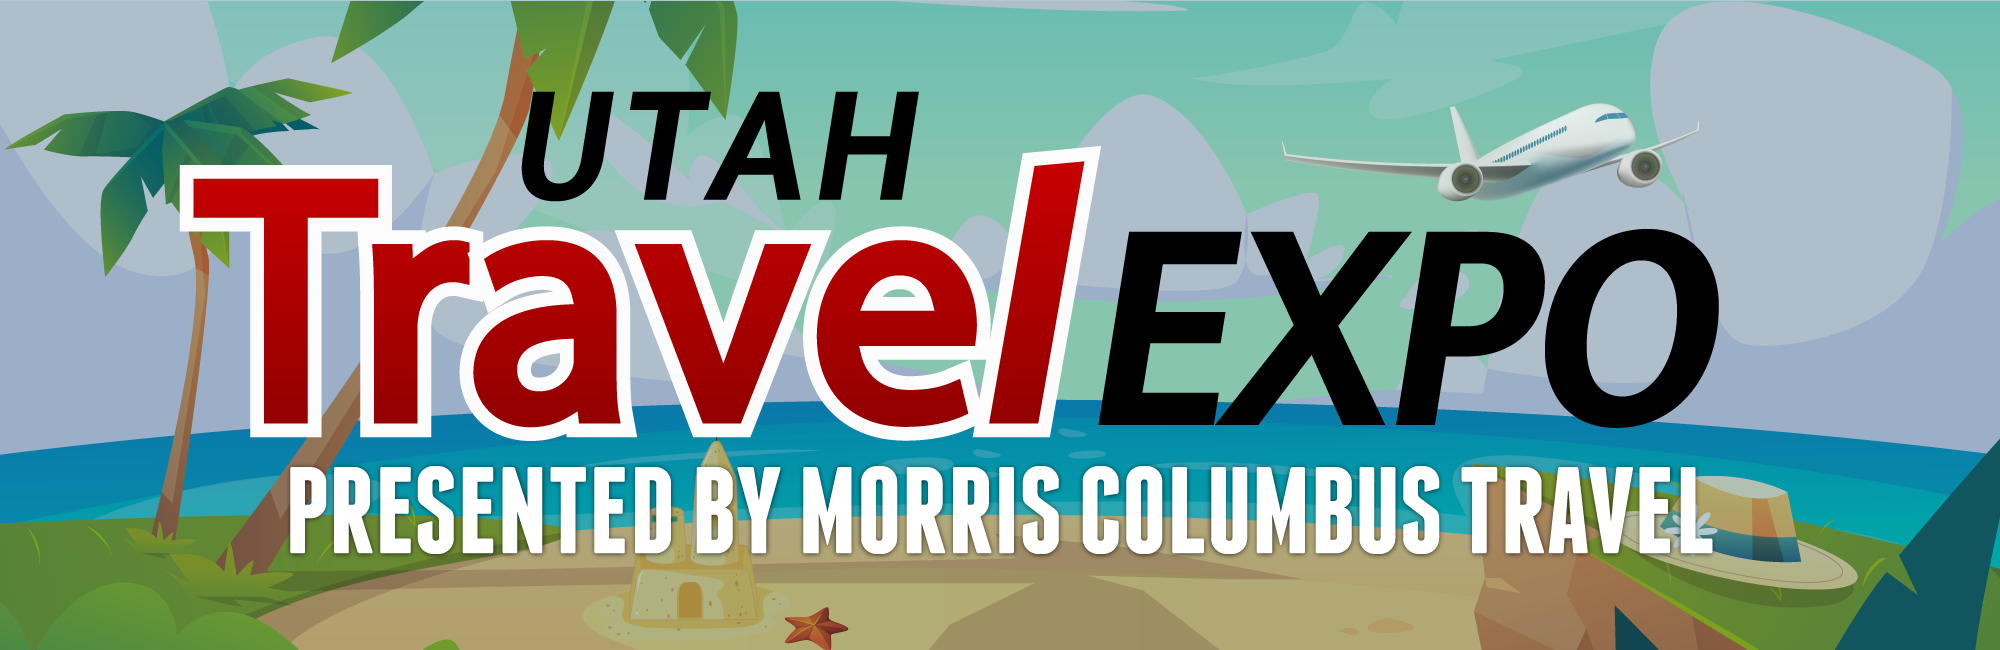 Morris Columbus Utah Travel Expo - Exhibitor Registration